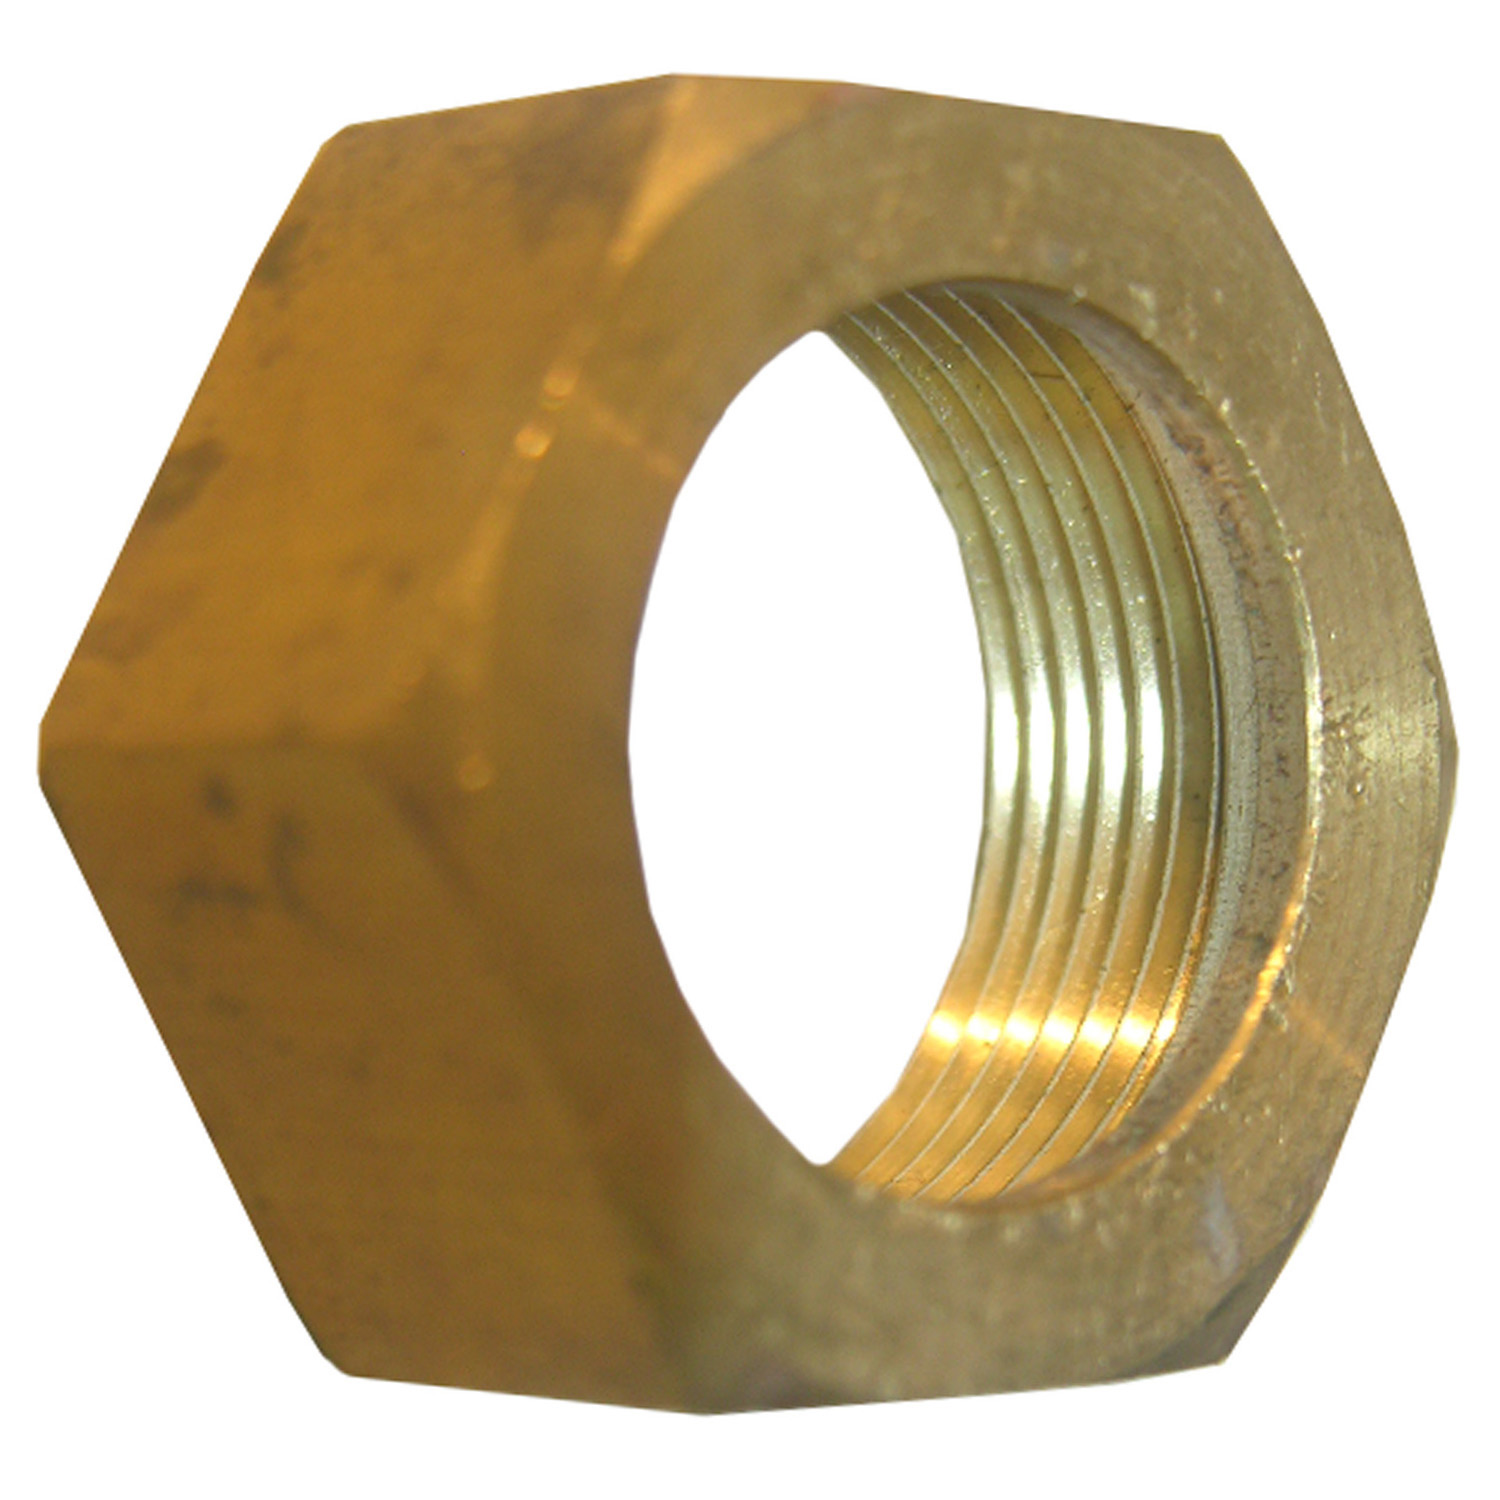 Lasco 17-6149 Nut, 1/2 in, Compression, Brass